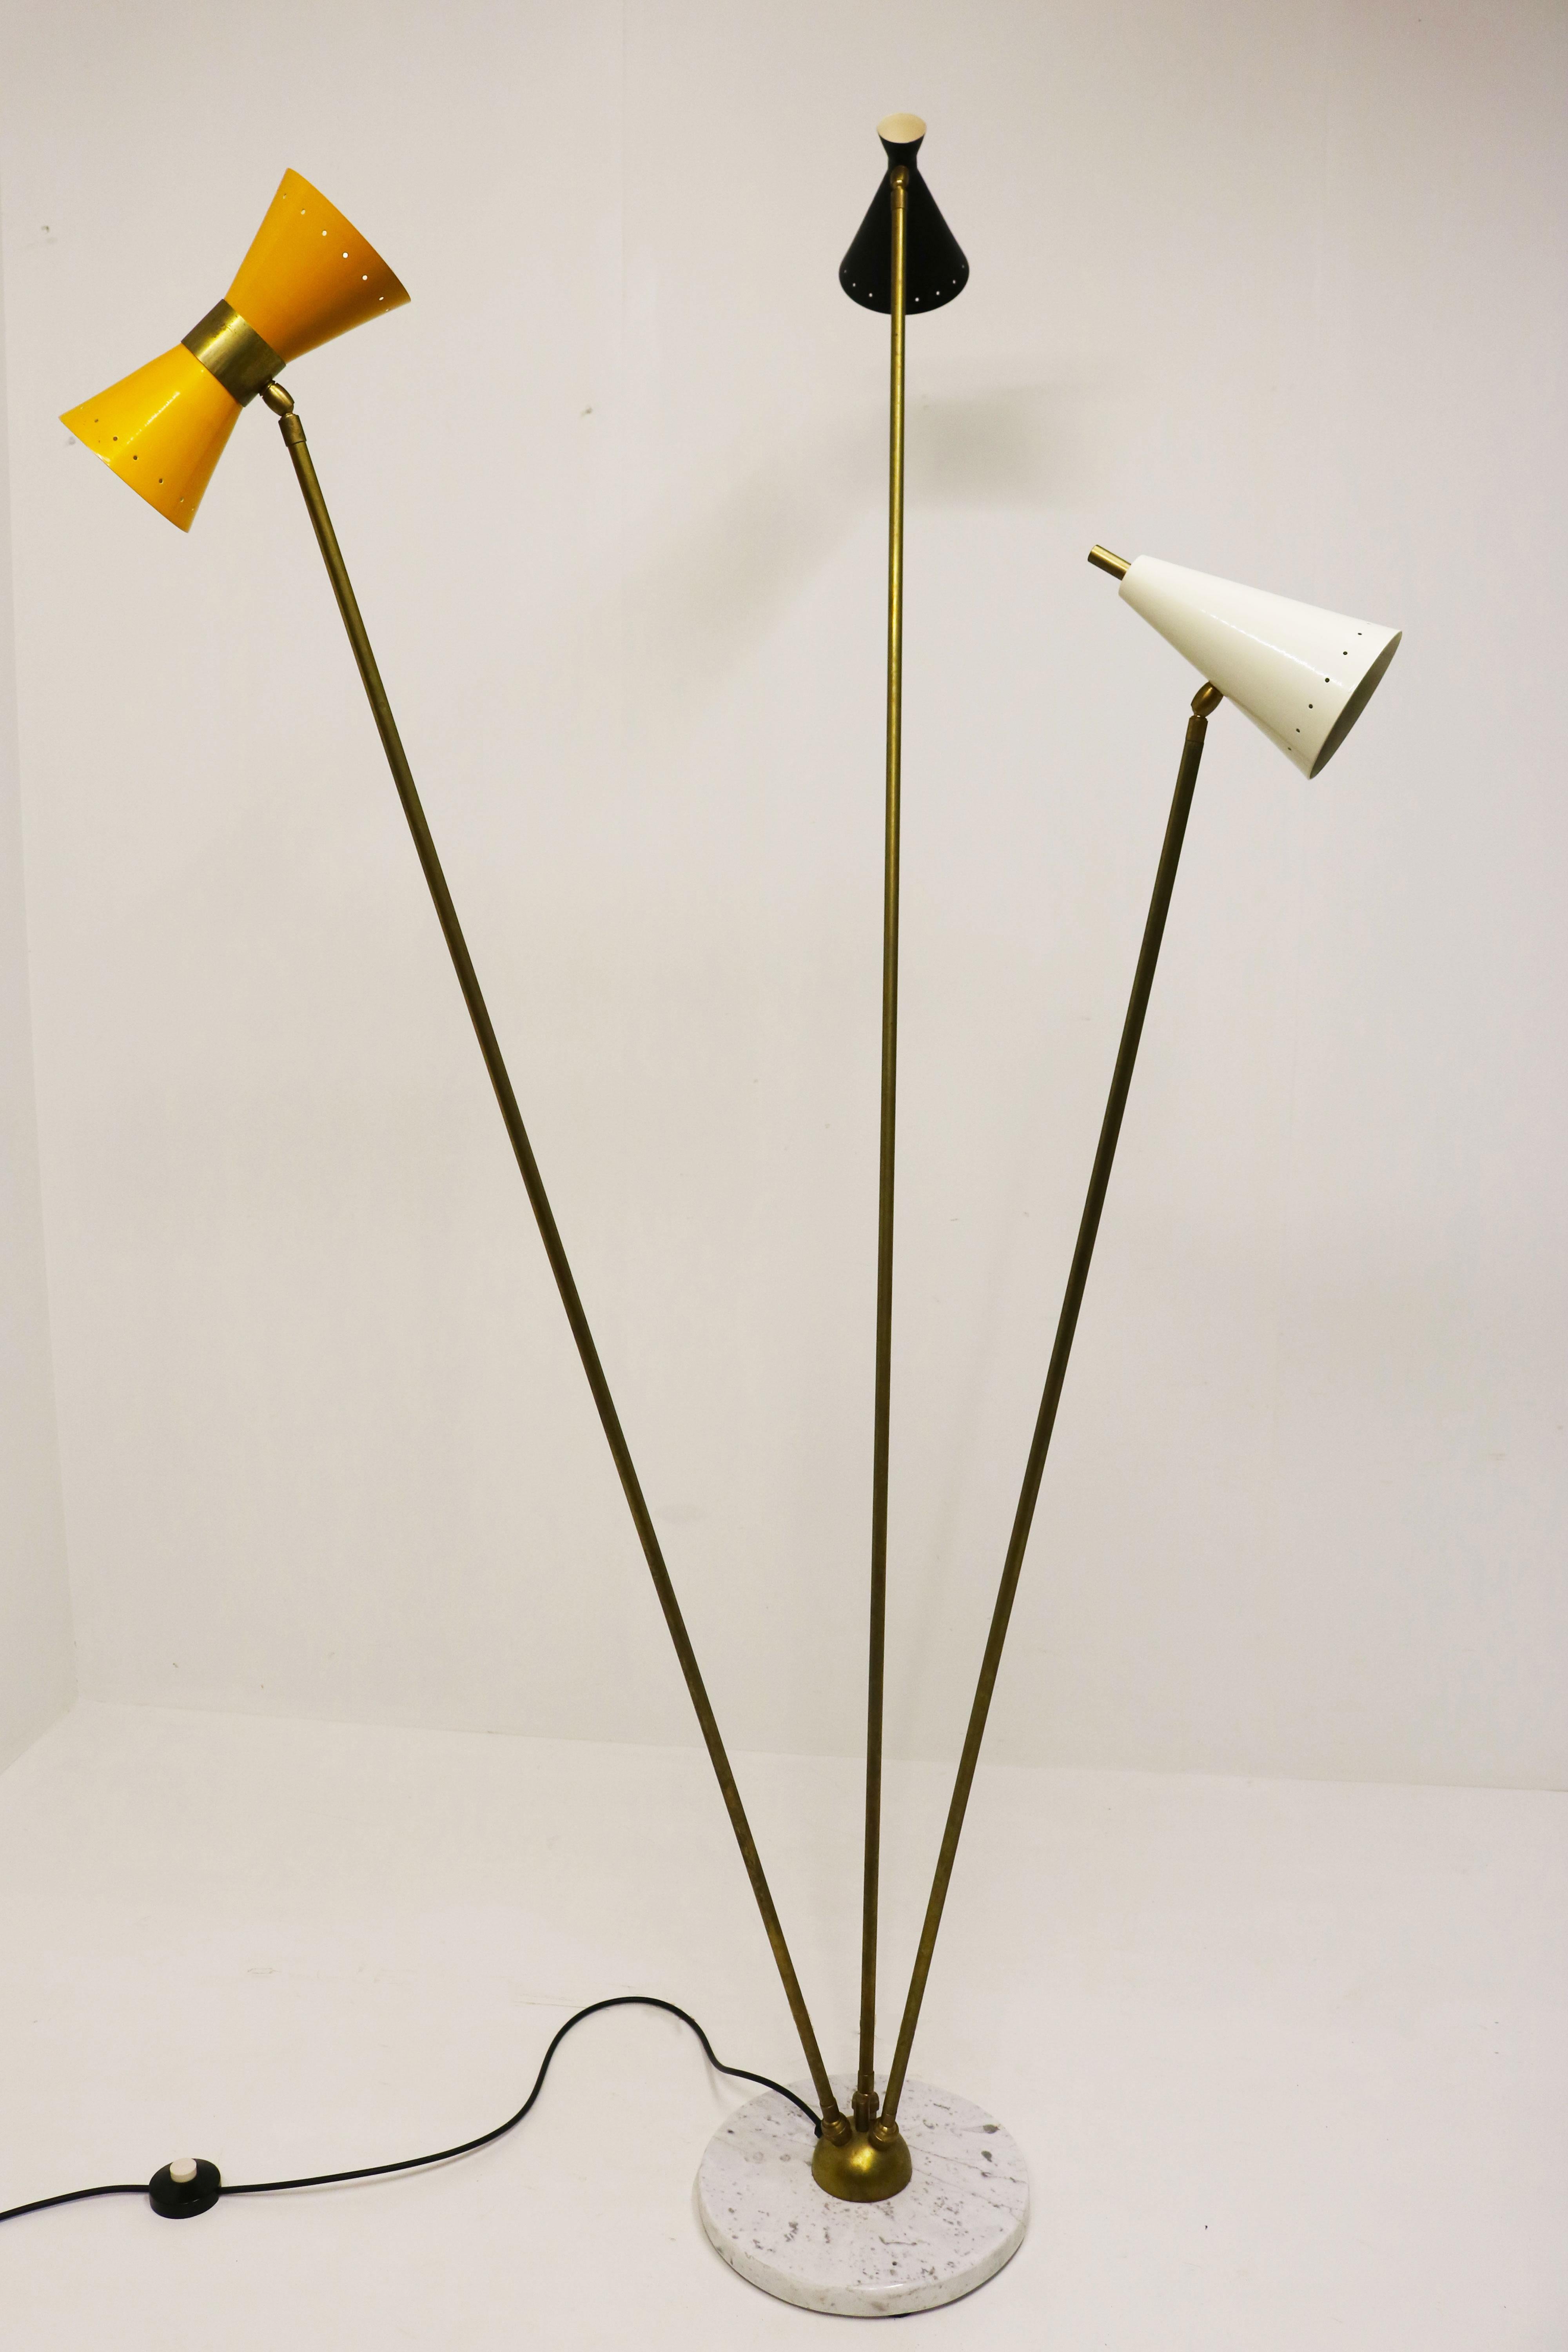 Stilvoll und zeitlos! Diese erstaunliche italienische Stehlampe aus Messing mit 3 verschieden geformten und farbigen Schirmen und einem Sockel aus Carrara-Marmor. 
Im minimalistischen Designstil von Stilnovo 1950. 
Die Stehlampe hat 4